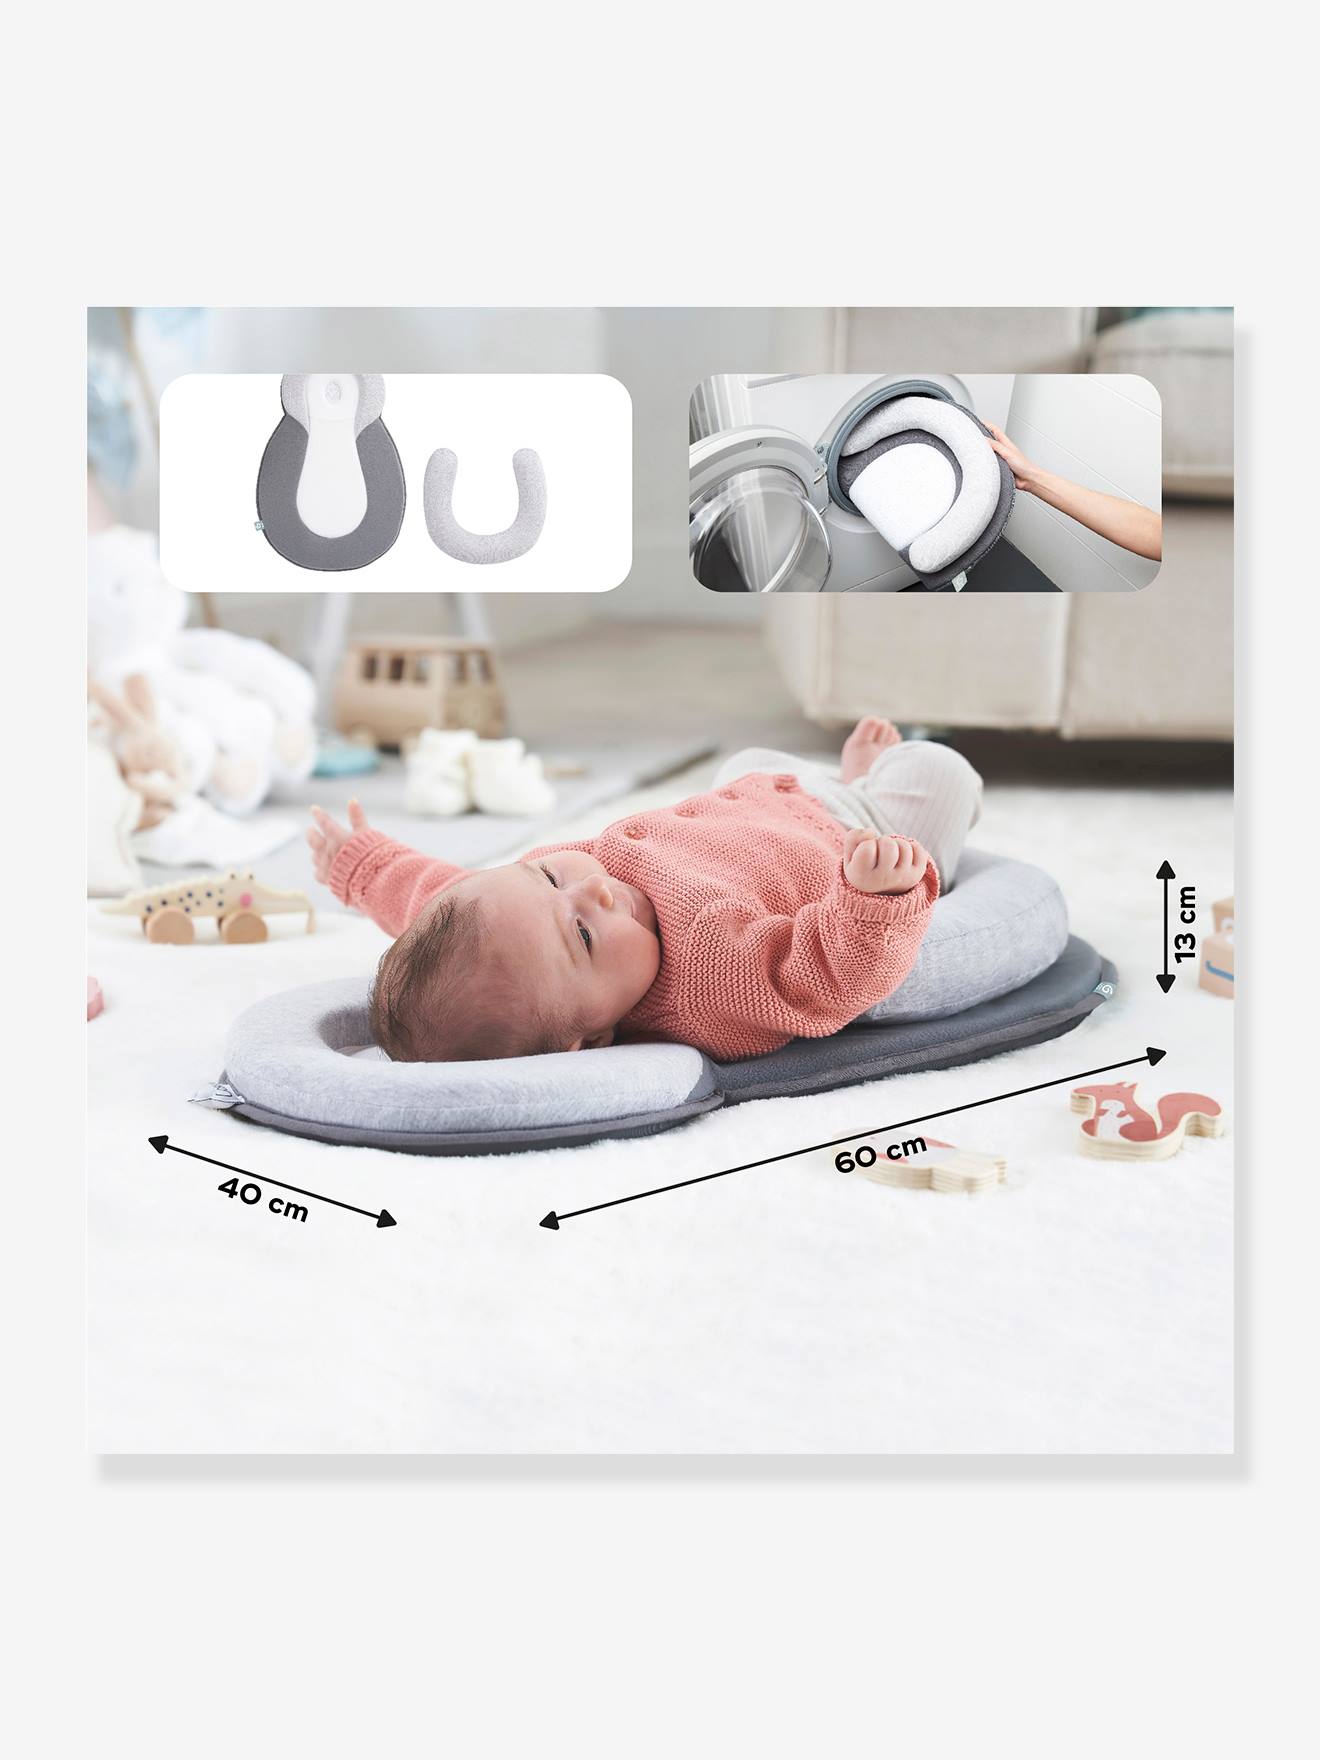 Couverture bébé : la choisir et l'utiliser – BB Malin